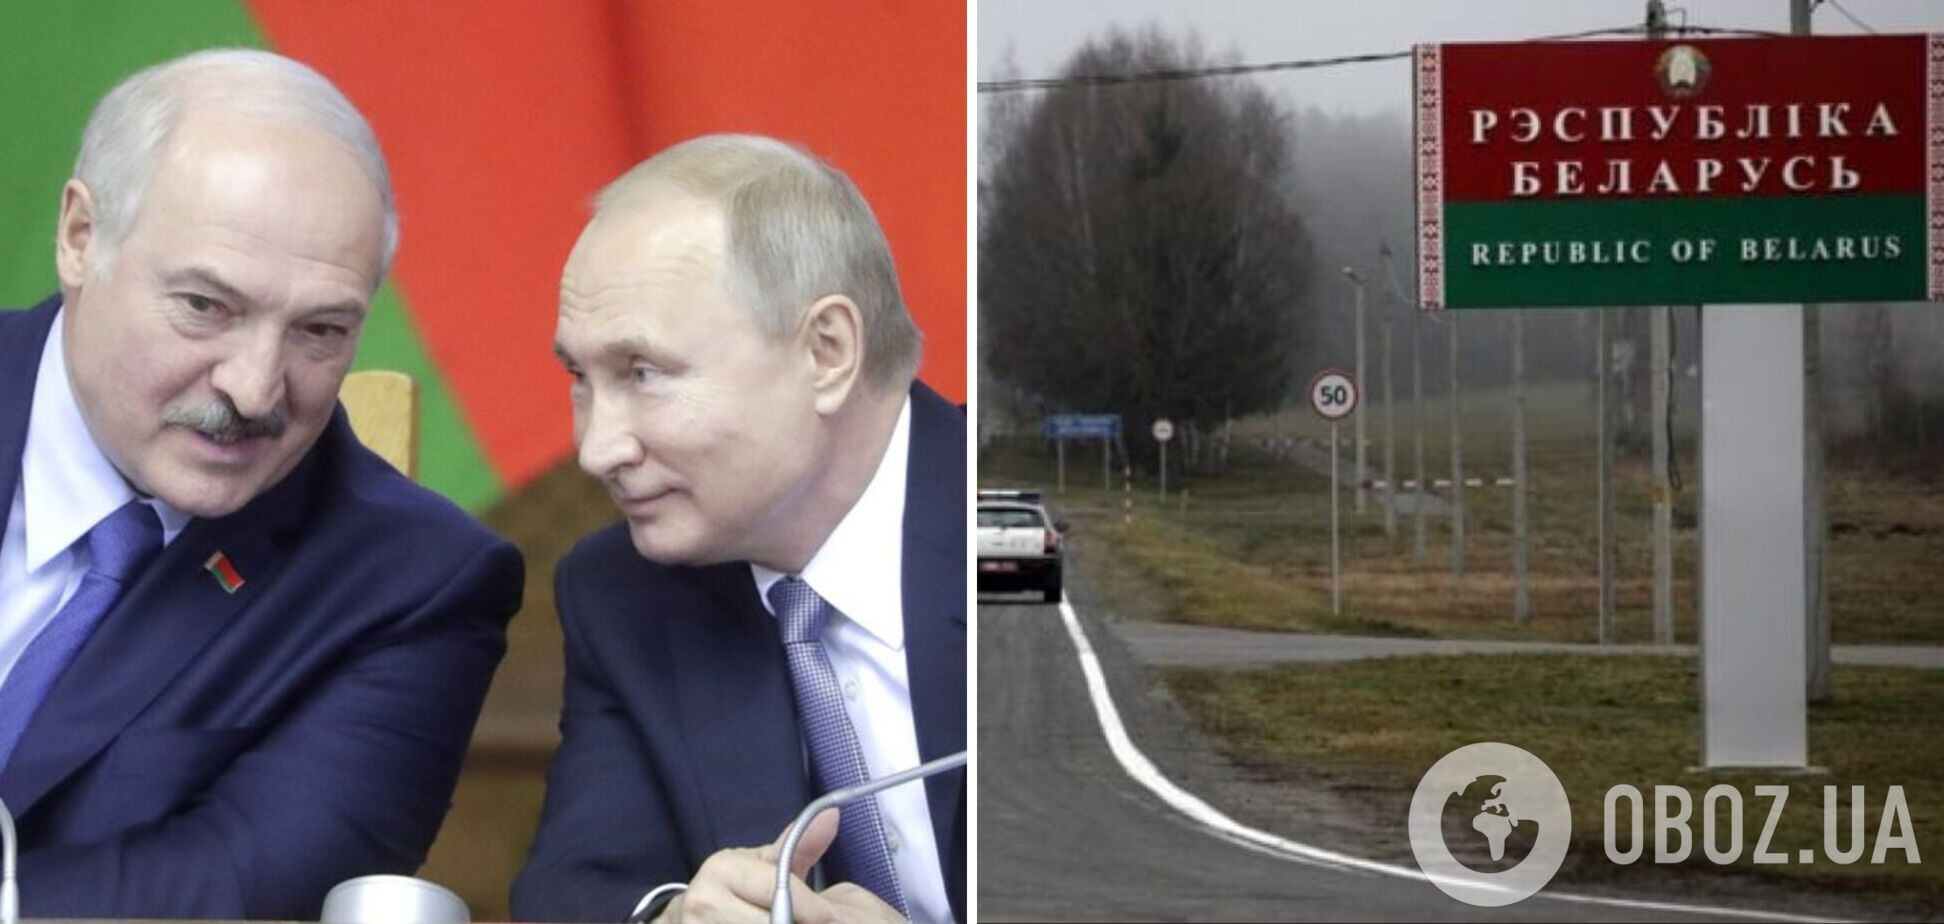 Росія перекинула до Білорусі групу найманців для теракту під 'чужим прапором': Путін хоче змусити Лукашенка до війни проти України - ЗМІ